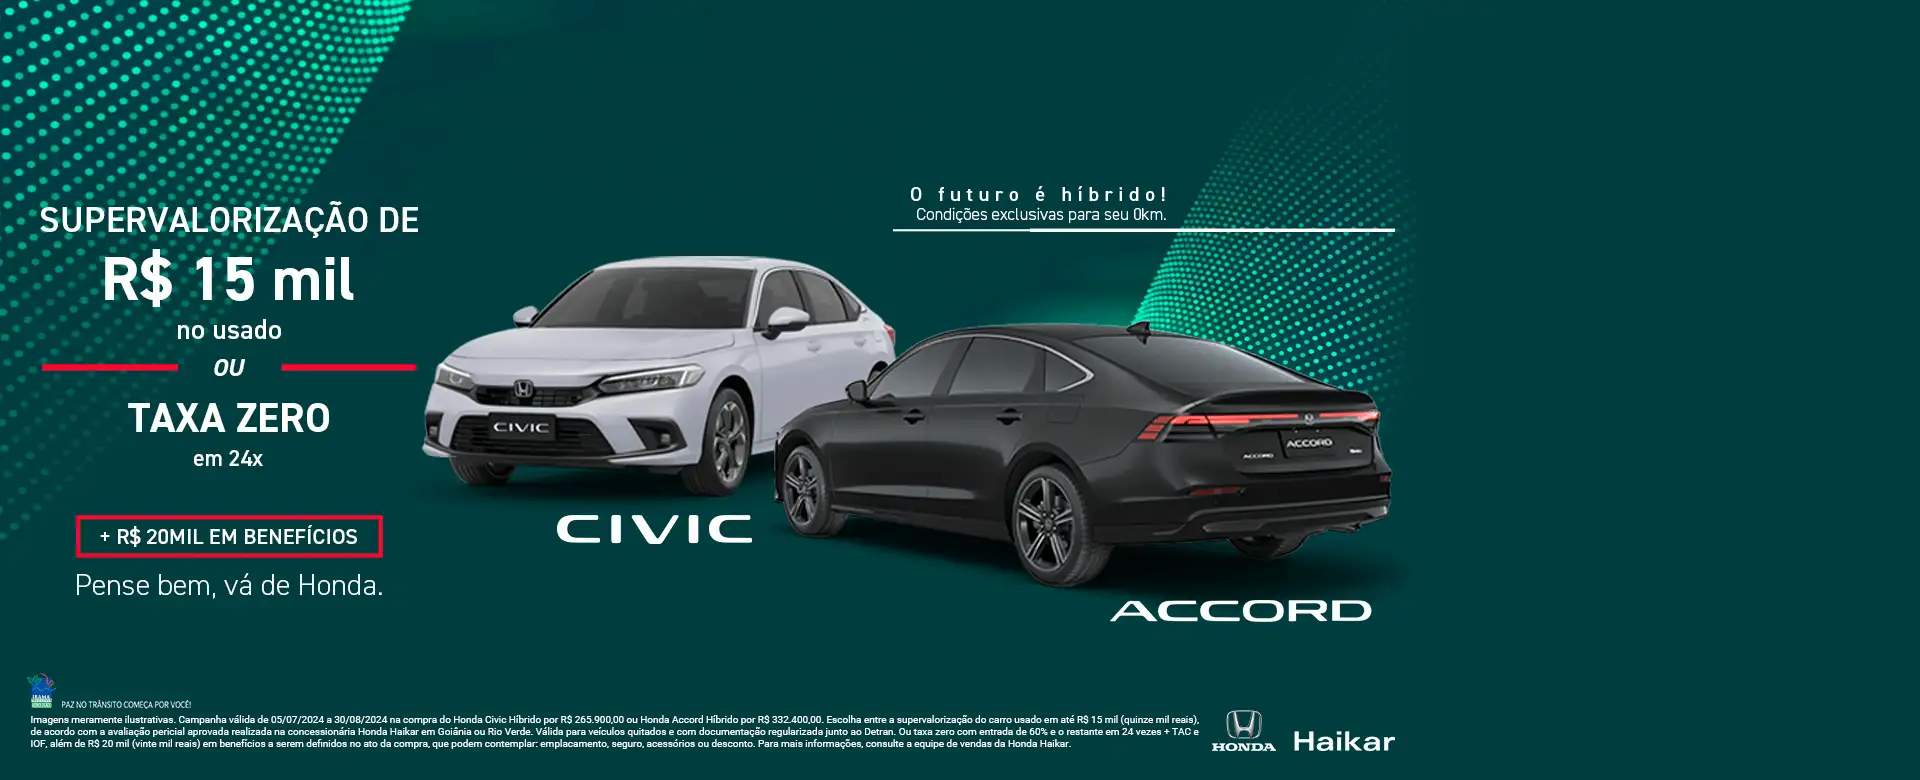 Julho - Haikar - Accord + Civic